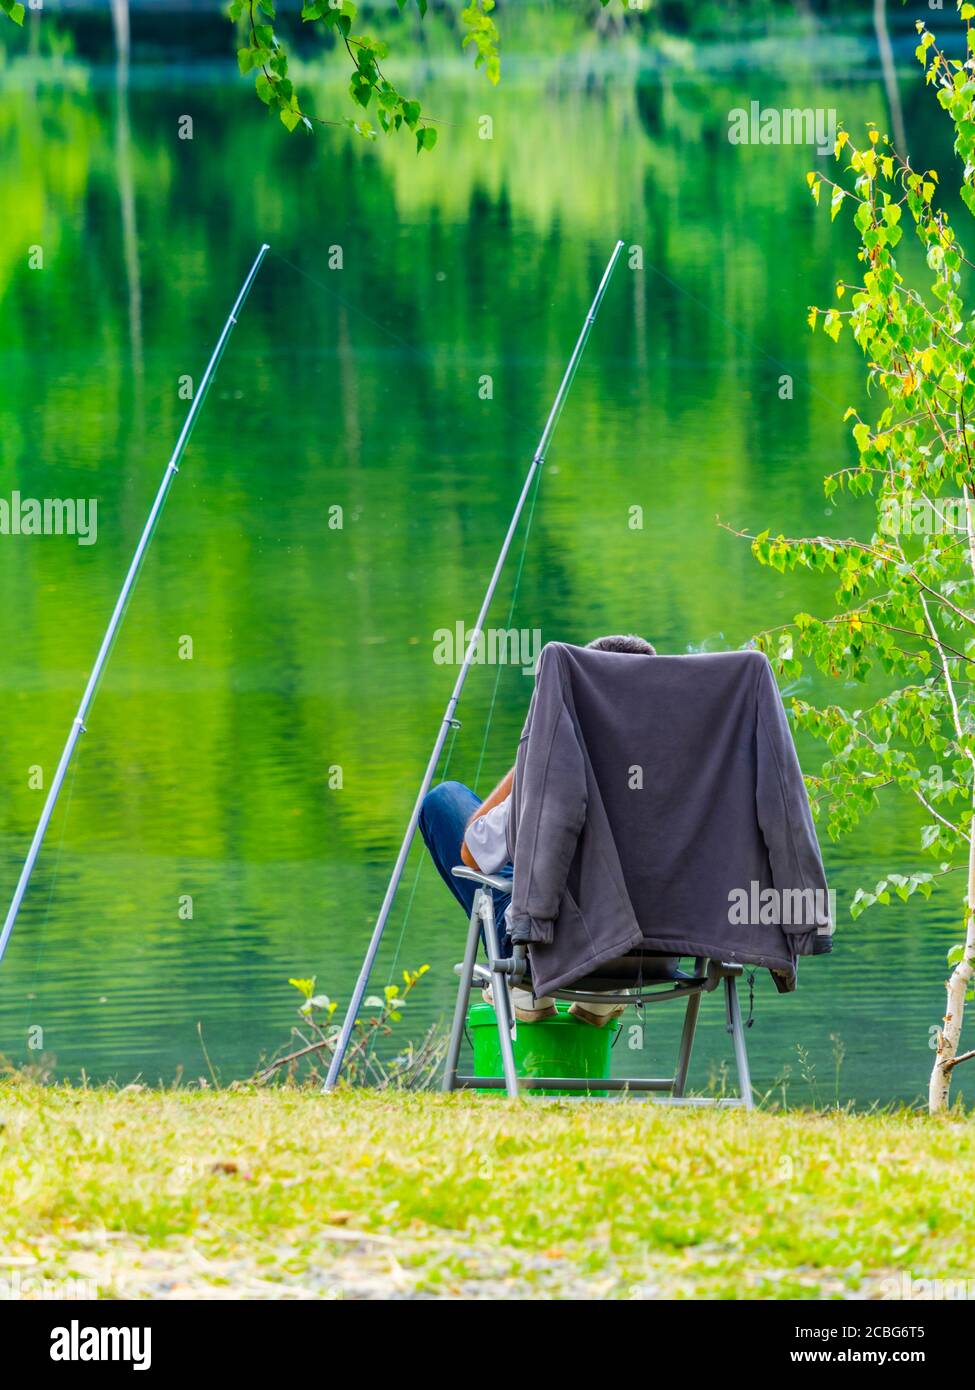 Pêcheur en attente Green forêt joli beau préservé nature environnement naturel Saison de printemps lac Lepenica près de Fuzine en Croatie Europe Banque D'Images